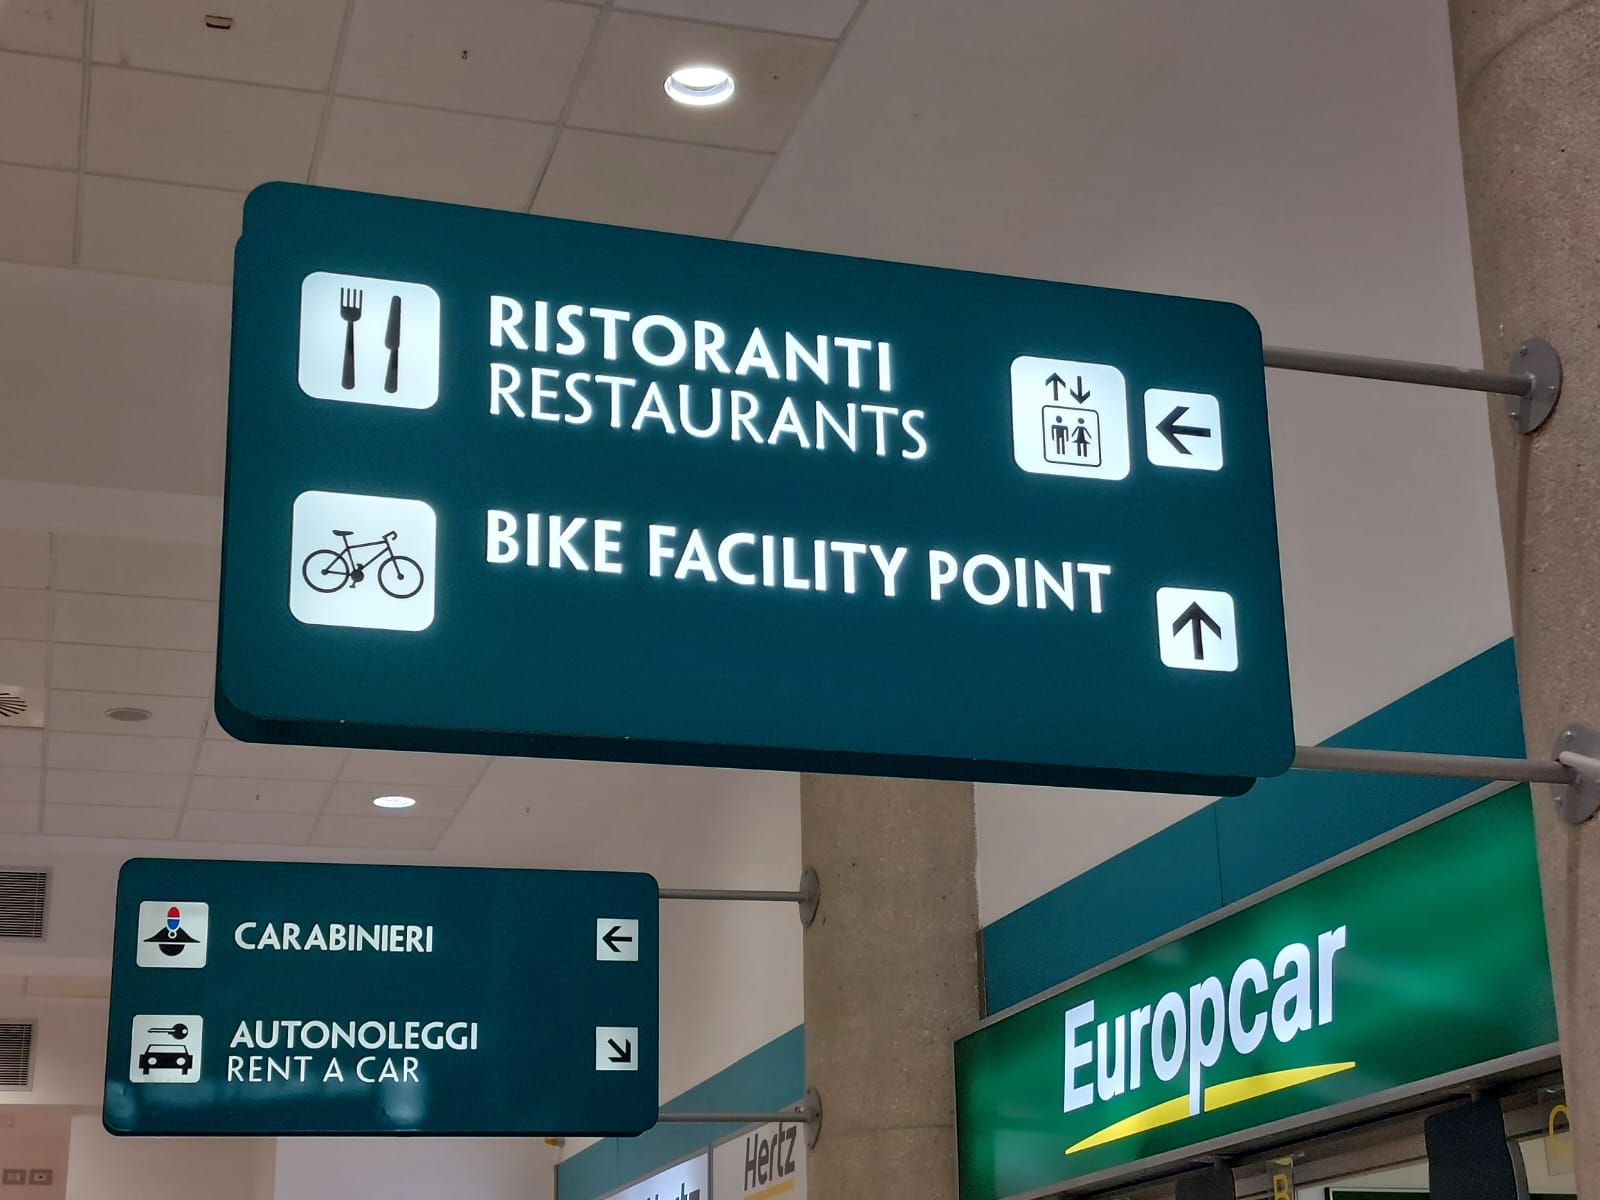 Galleria Trasporti, l’aeroporto di Bari è il primo bike friendly. Inaugurata la prima postazione per montaggio e smontaggio biciclette per i cicloturisti - Diapositiva 7 di 15